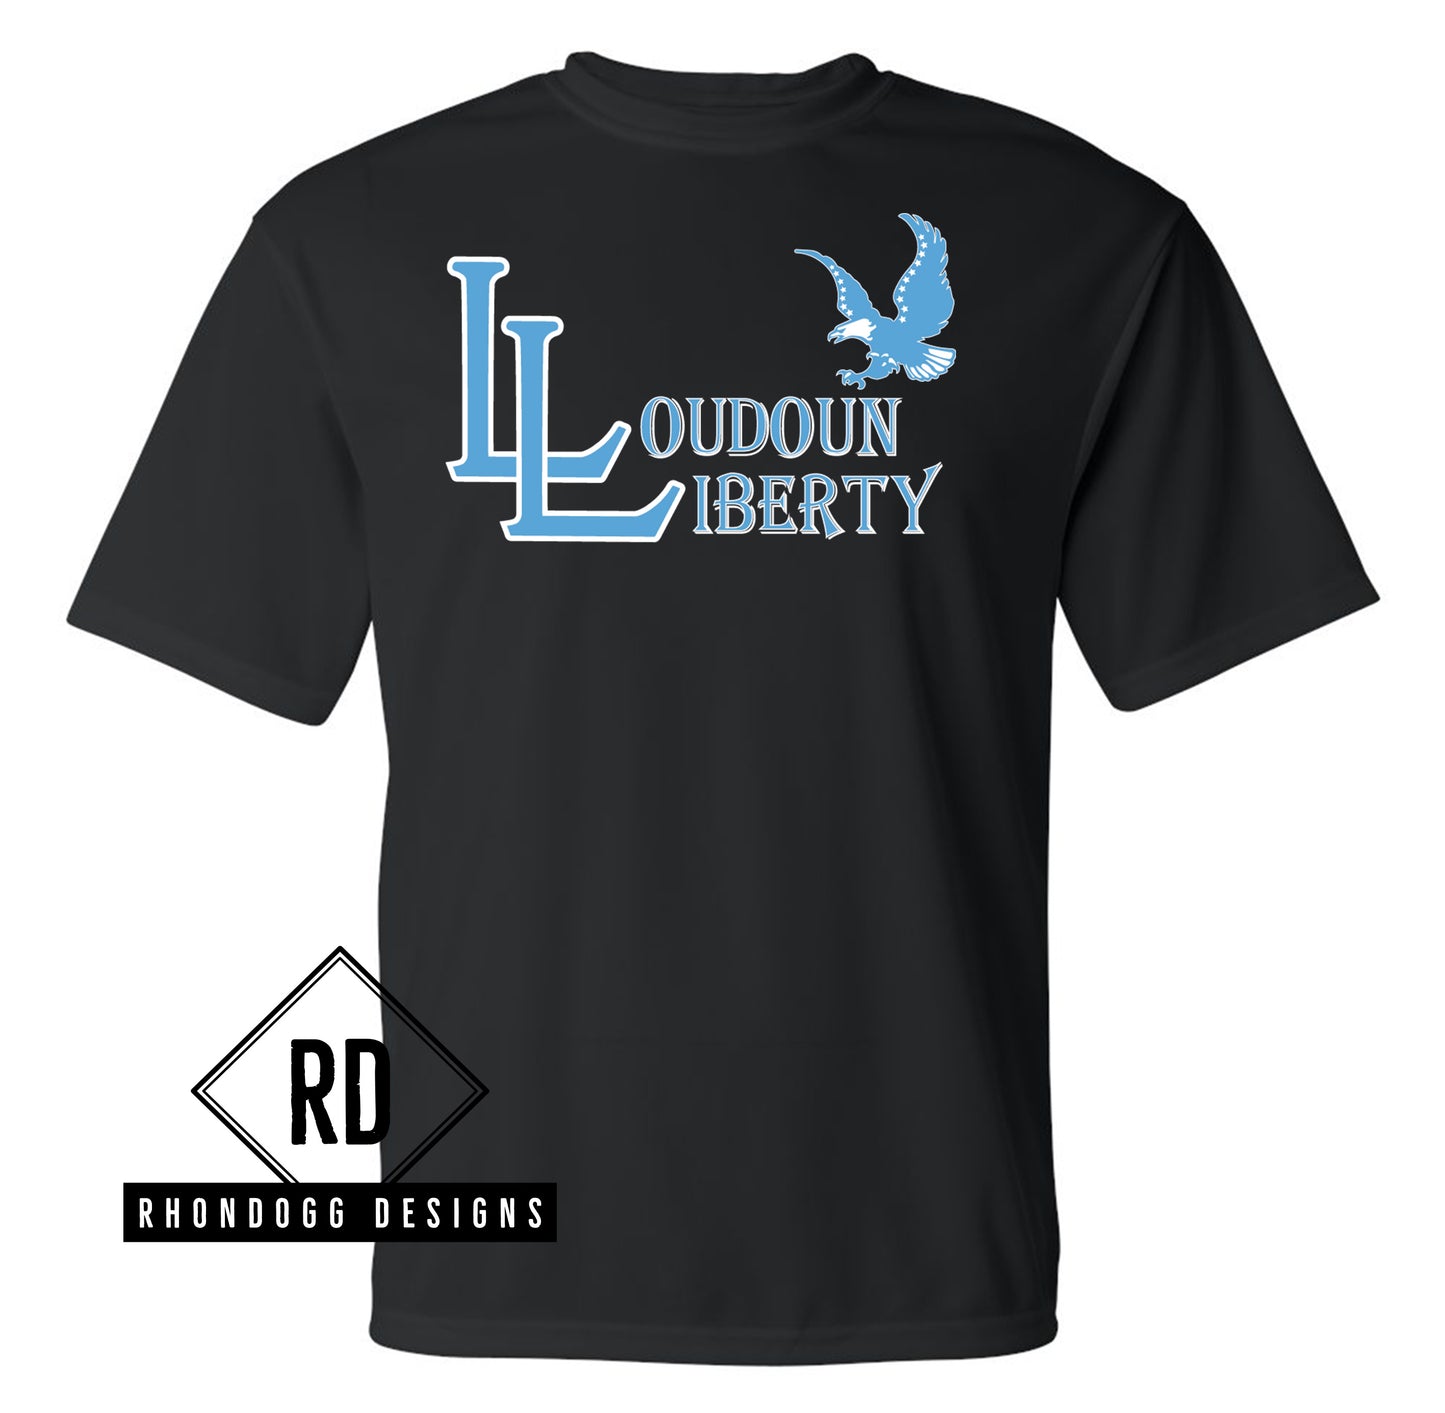 Loudoun Liberty Performance Shirt